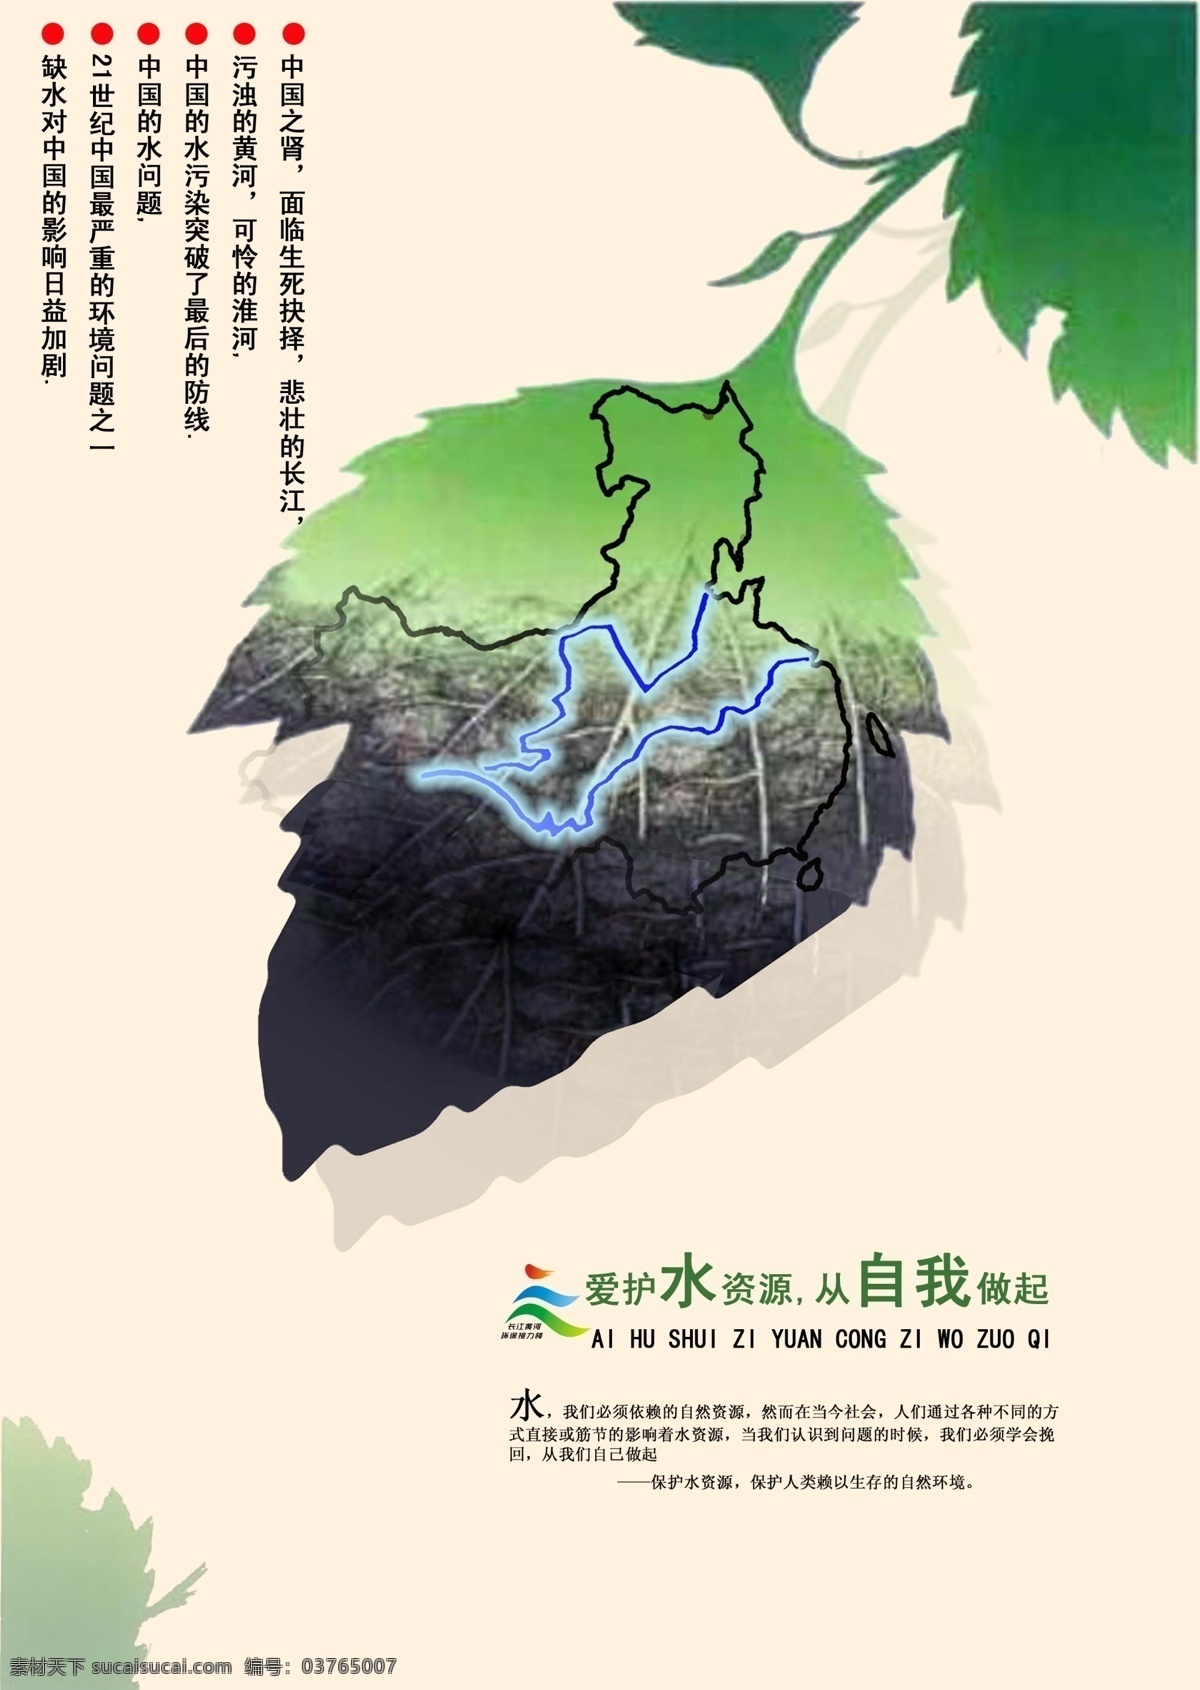 爱护 水资源 公益 海报 公益海报 绿色 水污染 长江 黄河 中国 创意设计 爱护水资源 健康 树叶 版式设计 广告设计模板 源文件 分层 红色